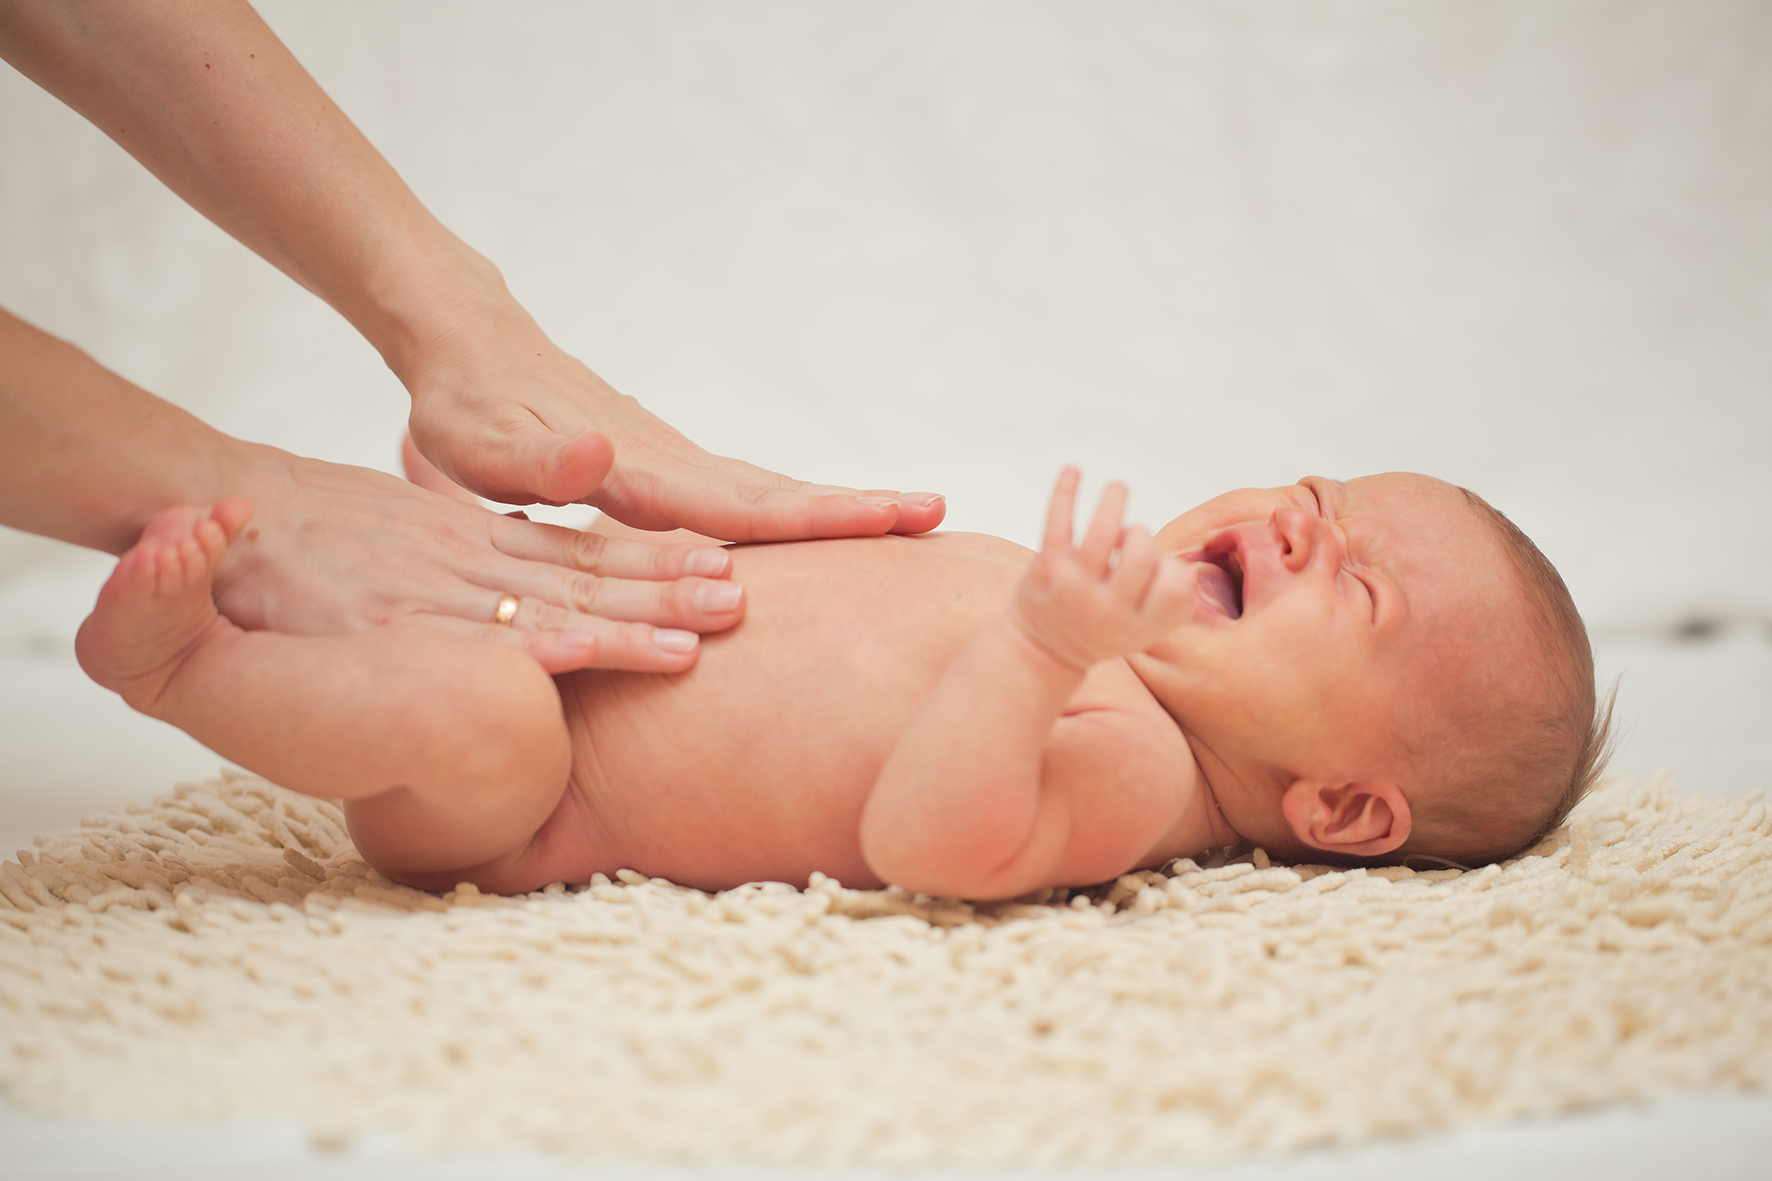 Nuevo estudio demuestra que la acupuntura reduce significativamente el llanto en bebés con cólico